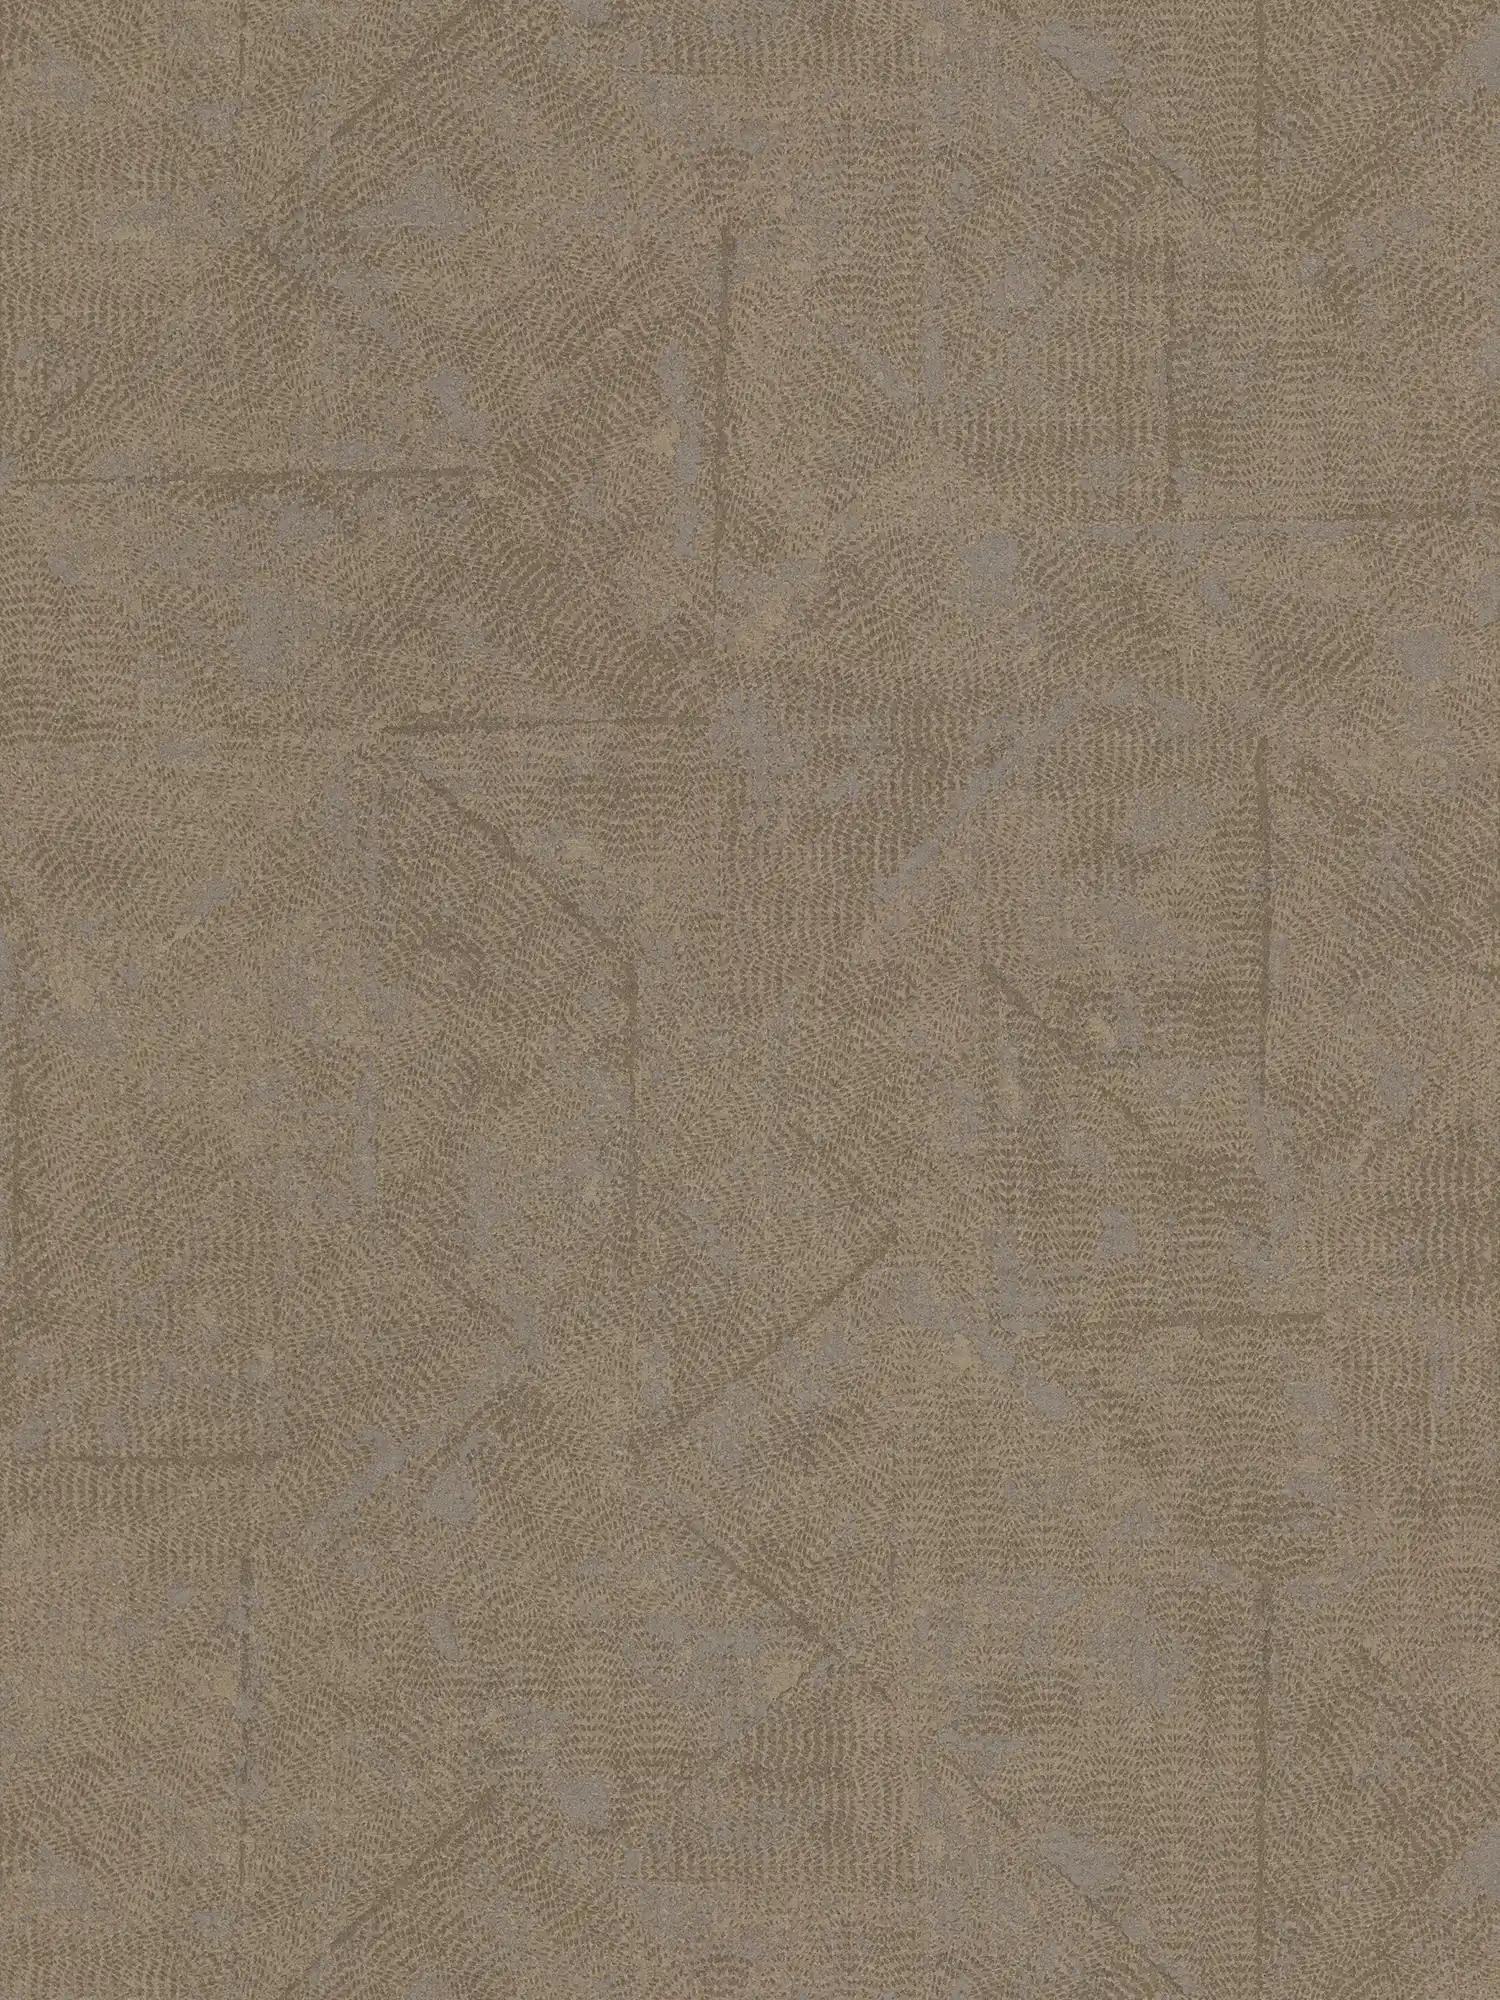 Papier peint style méditerranéen, à motifs - marron, bronze, gris
